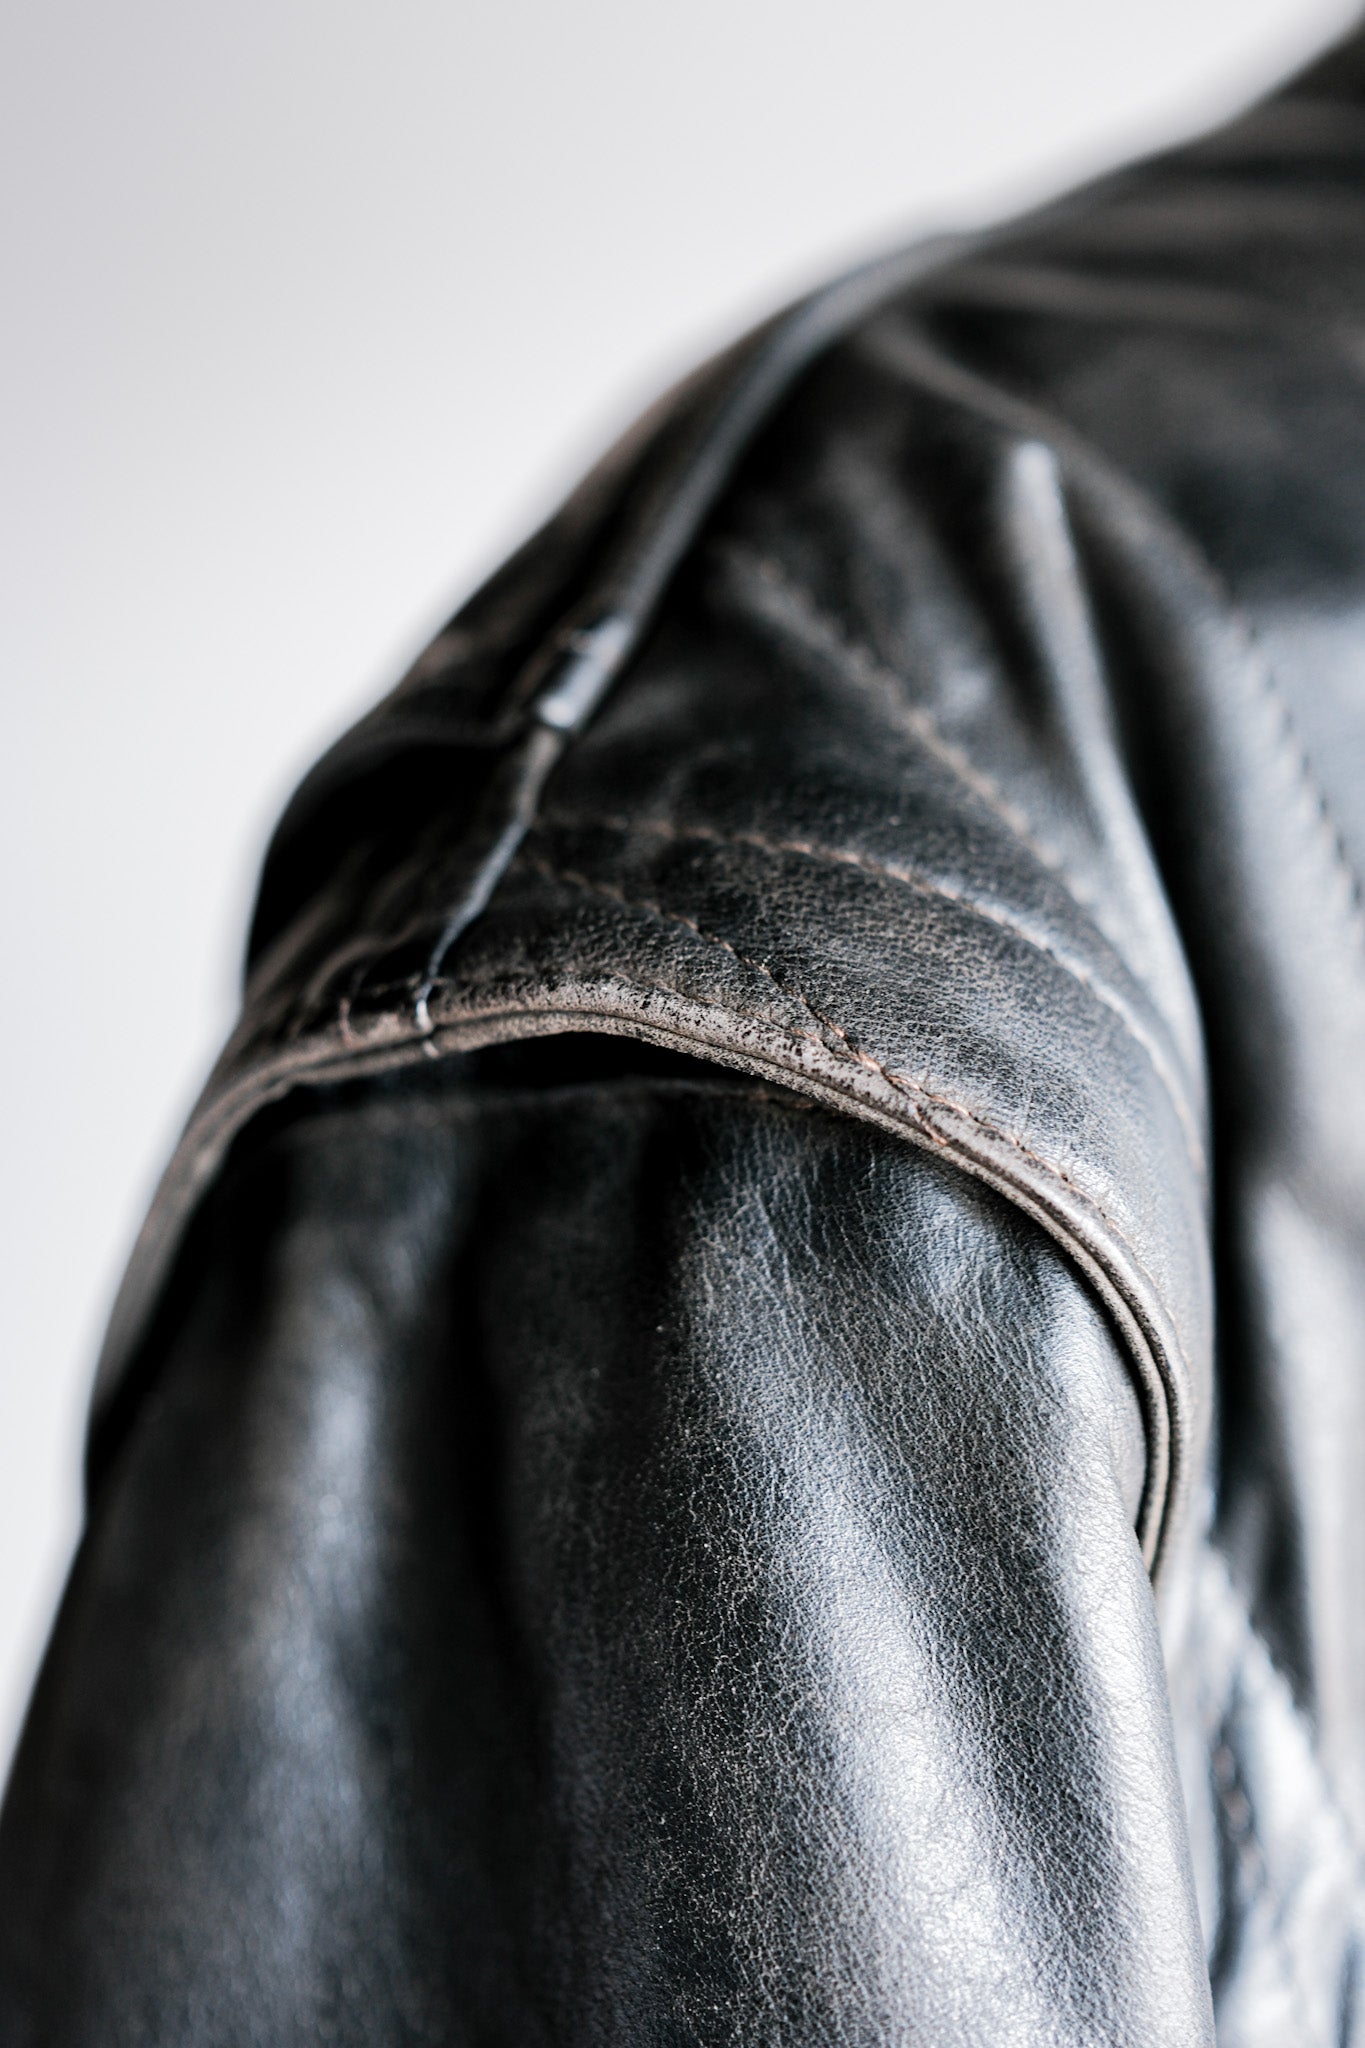 [~ 90's] Old Renoma Paris en cuir noir en cuir noire détachable Veste de poche avec taille de ligne.xxl